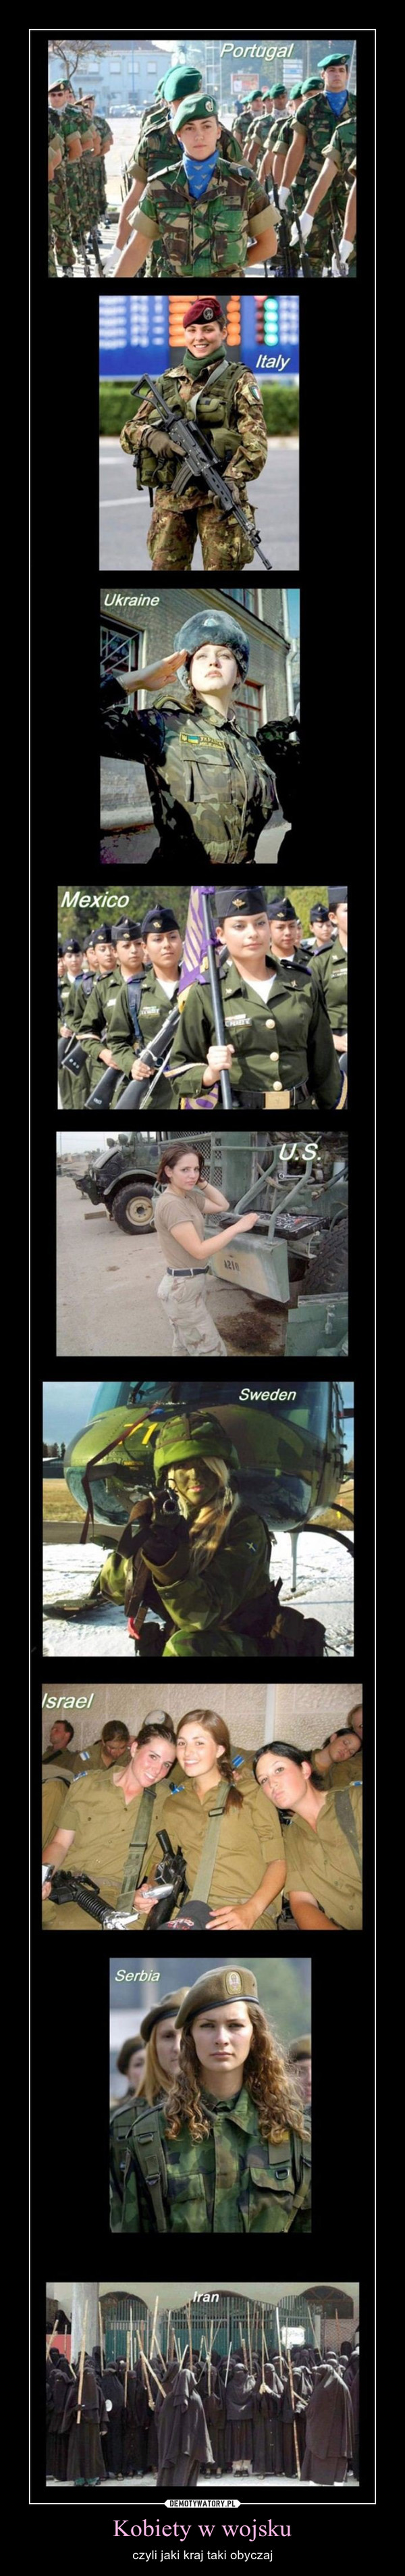 Kobiety w wojsku – czyli jaki kraj taki obyczaj 